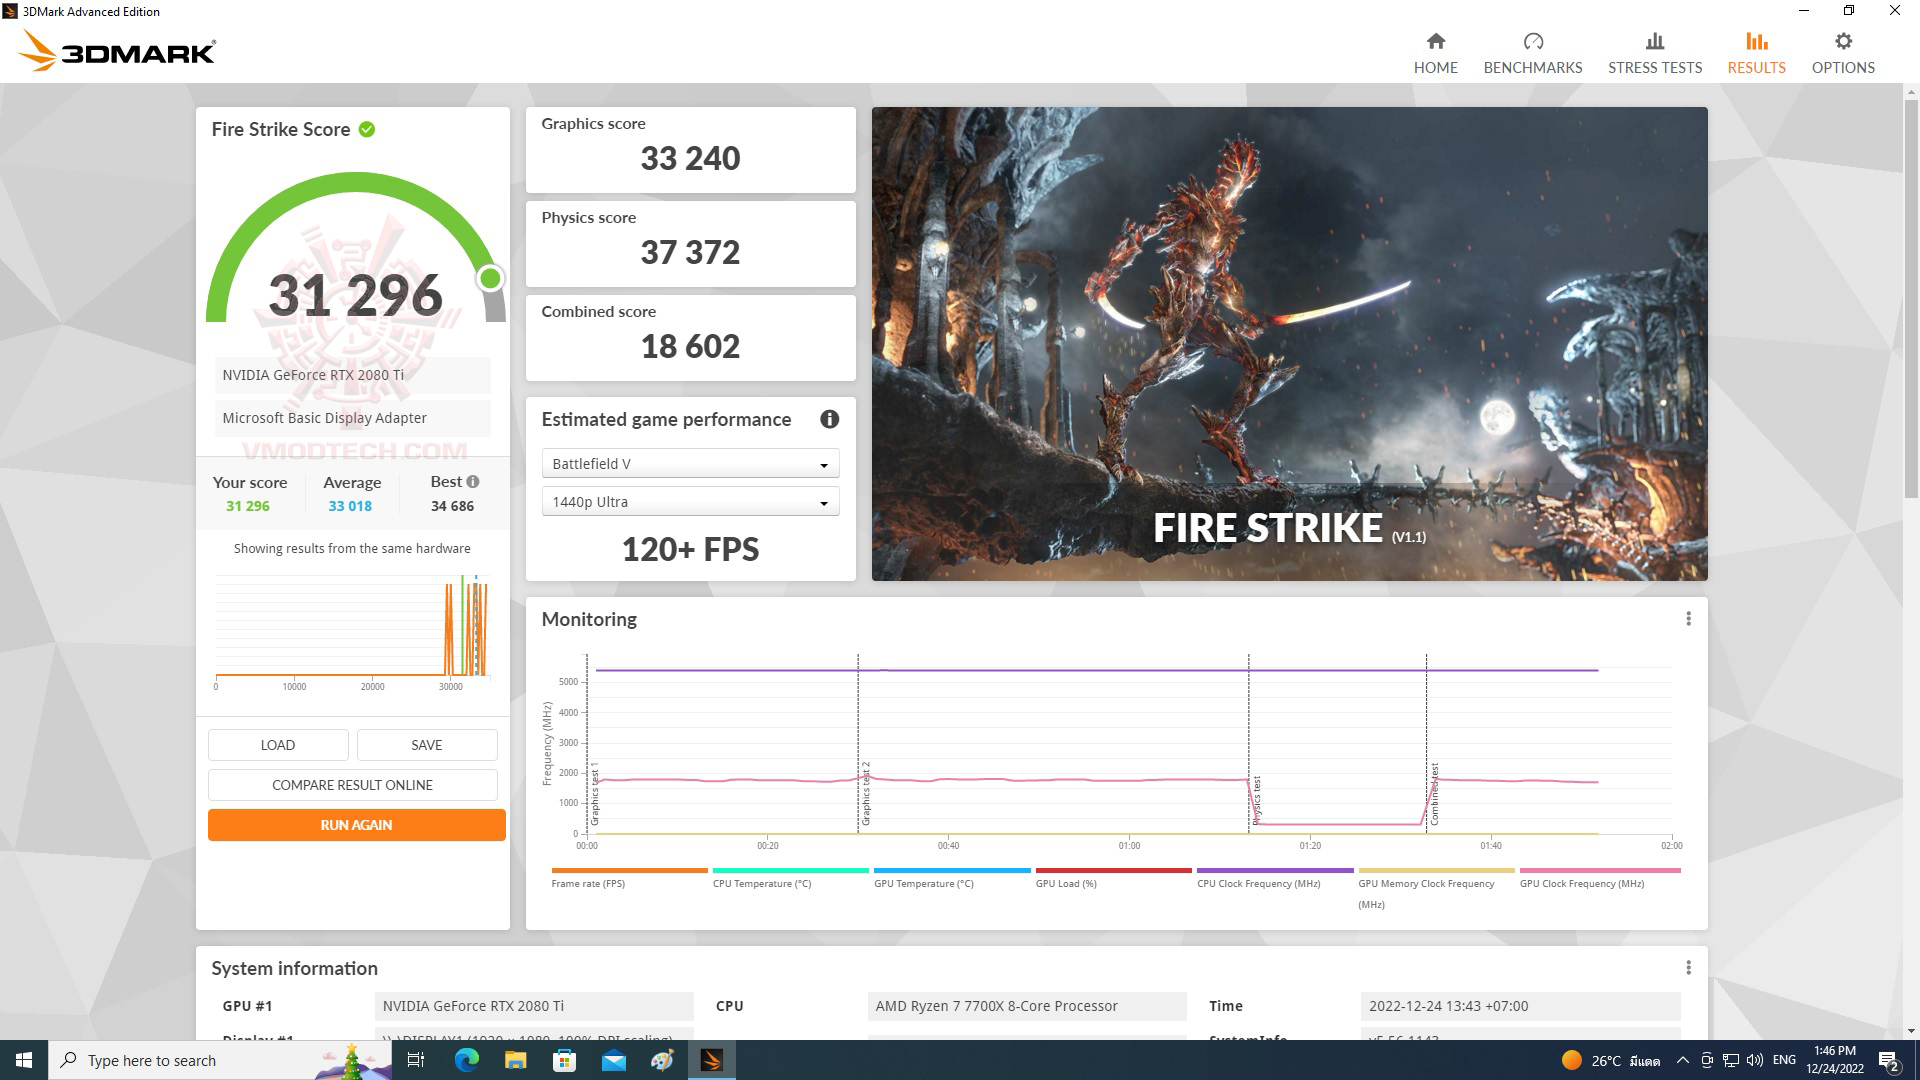 fire1 AMD RYZEN 7 7700X PROCESSOR REVIEW